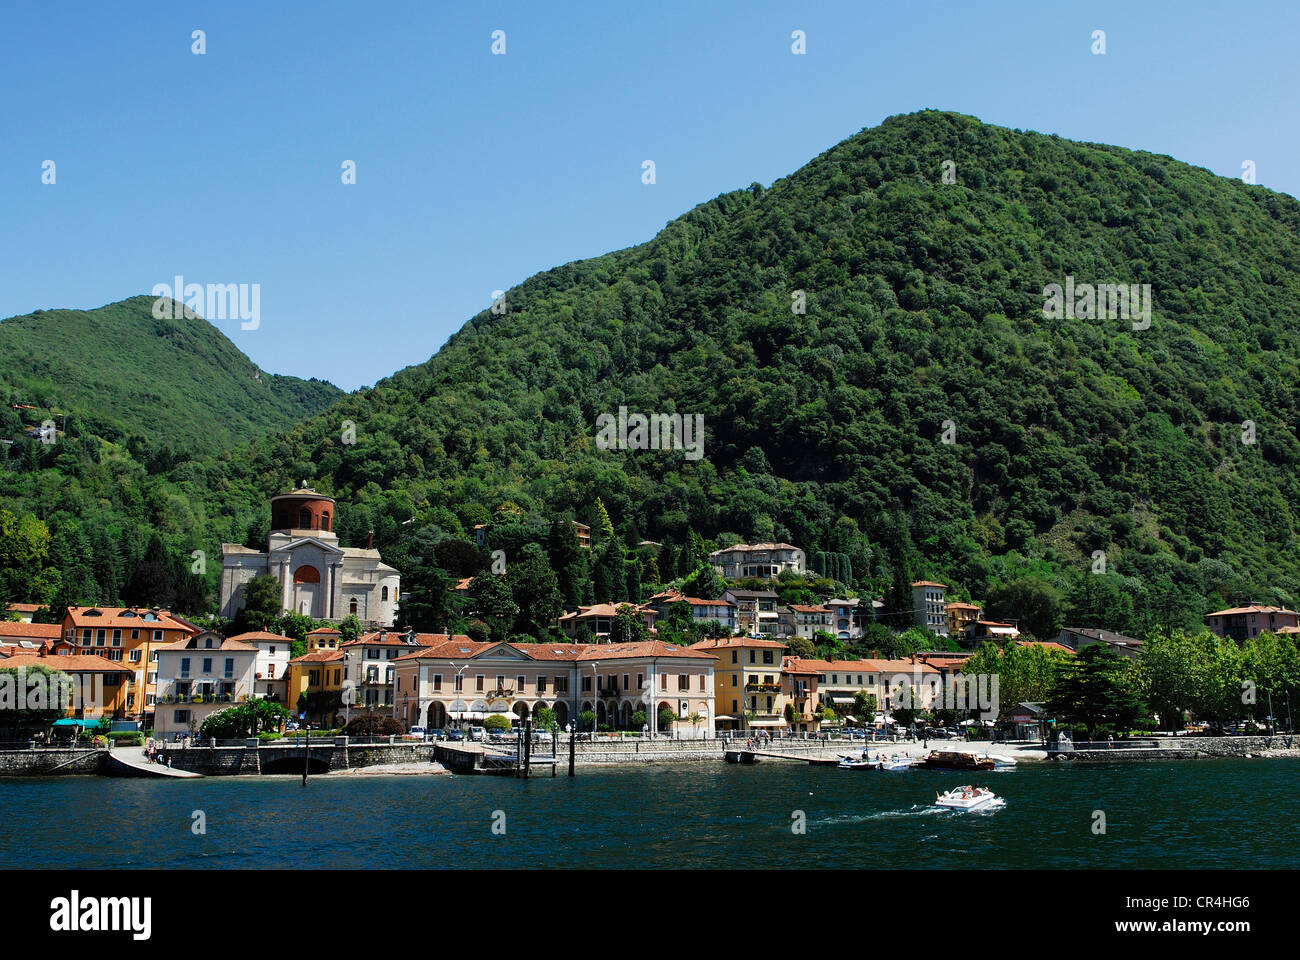 Italy, Lombardy, Lake Maggiore, Laveno Mombello and Sasso del Ferro Mountain Stock Photo